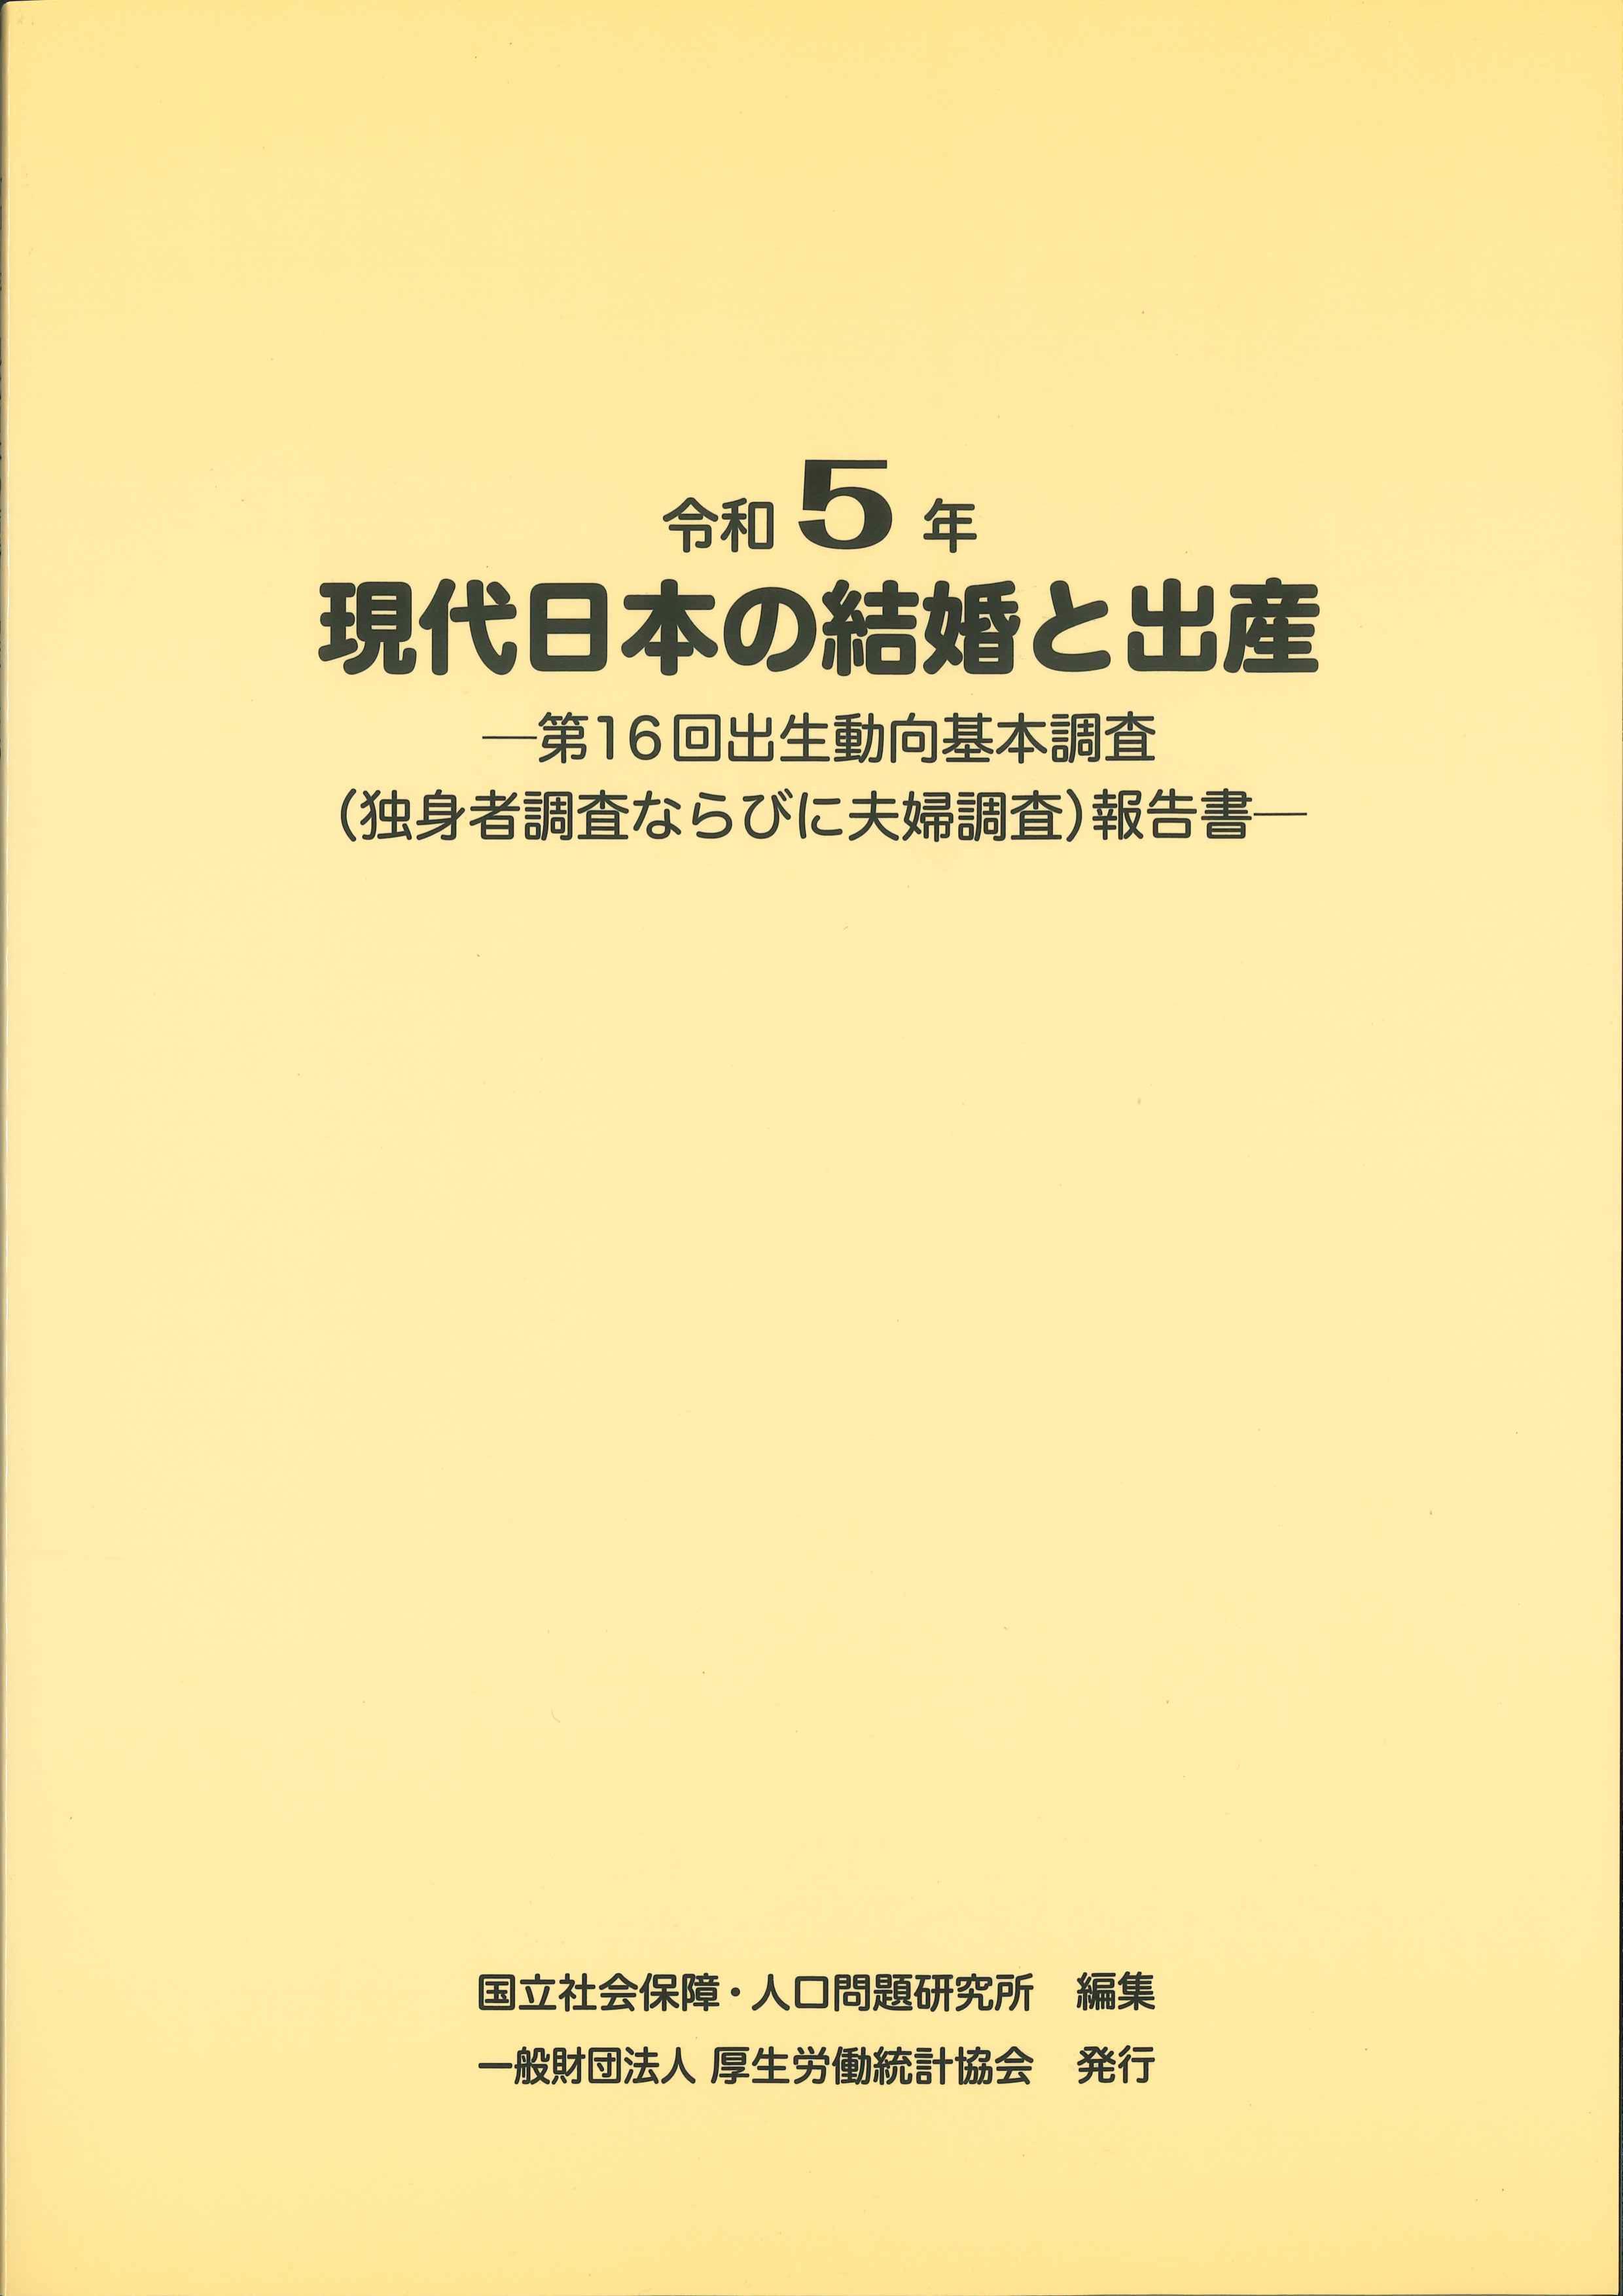 令和5年　現代日本の結婚と出産－第16回出生動向基本調査－(独身者調査ならびに夫婦調査)報告書